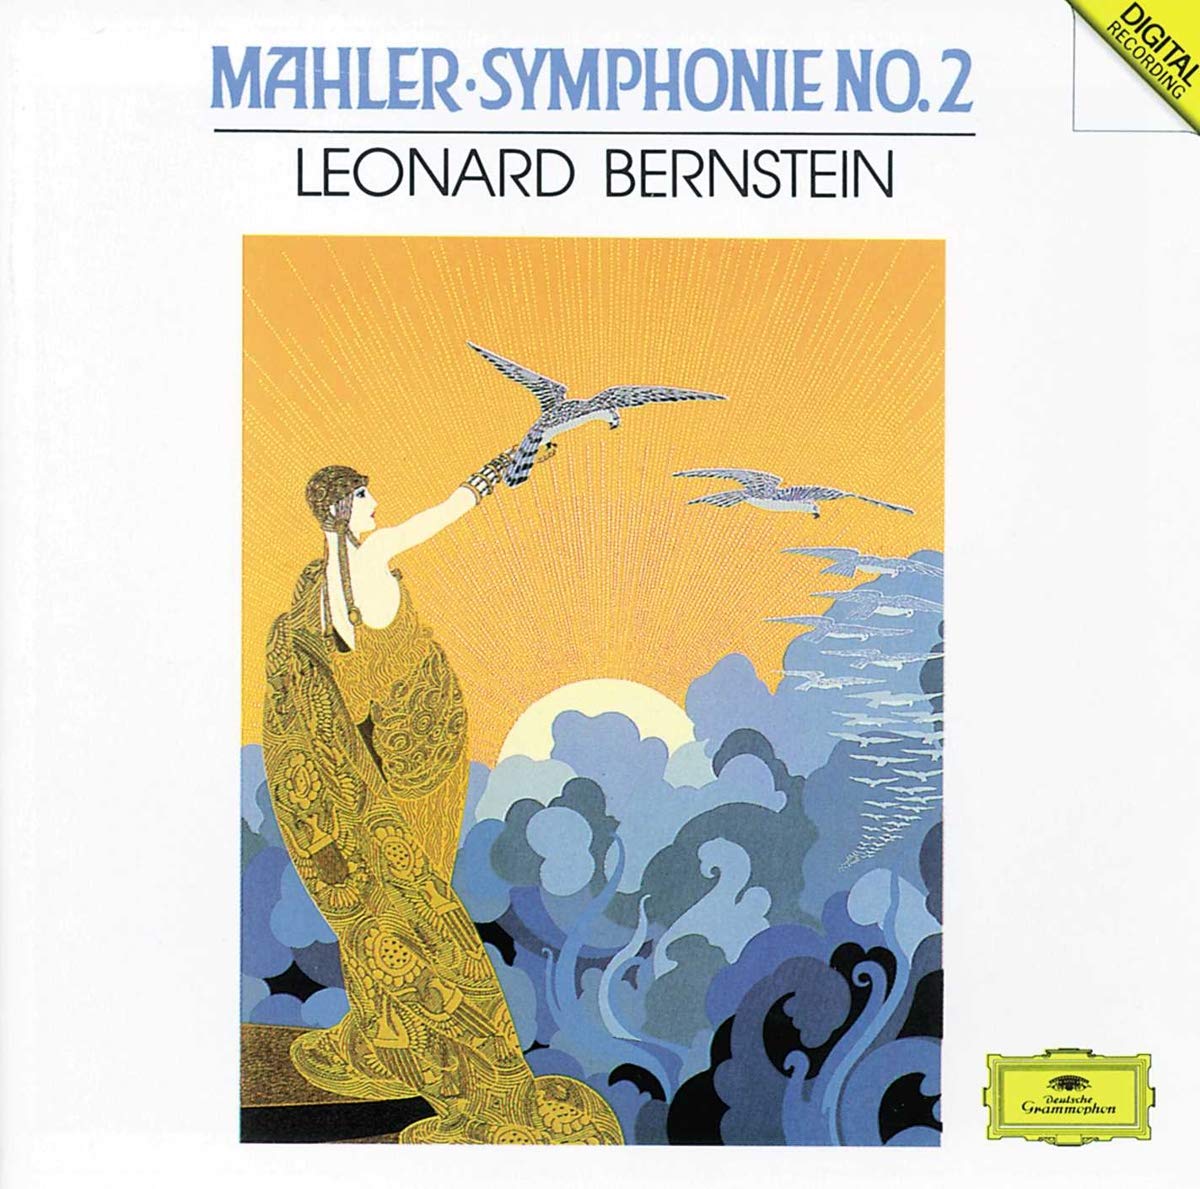 Mahler album art